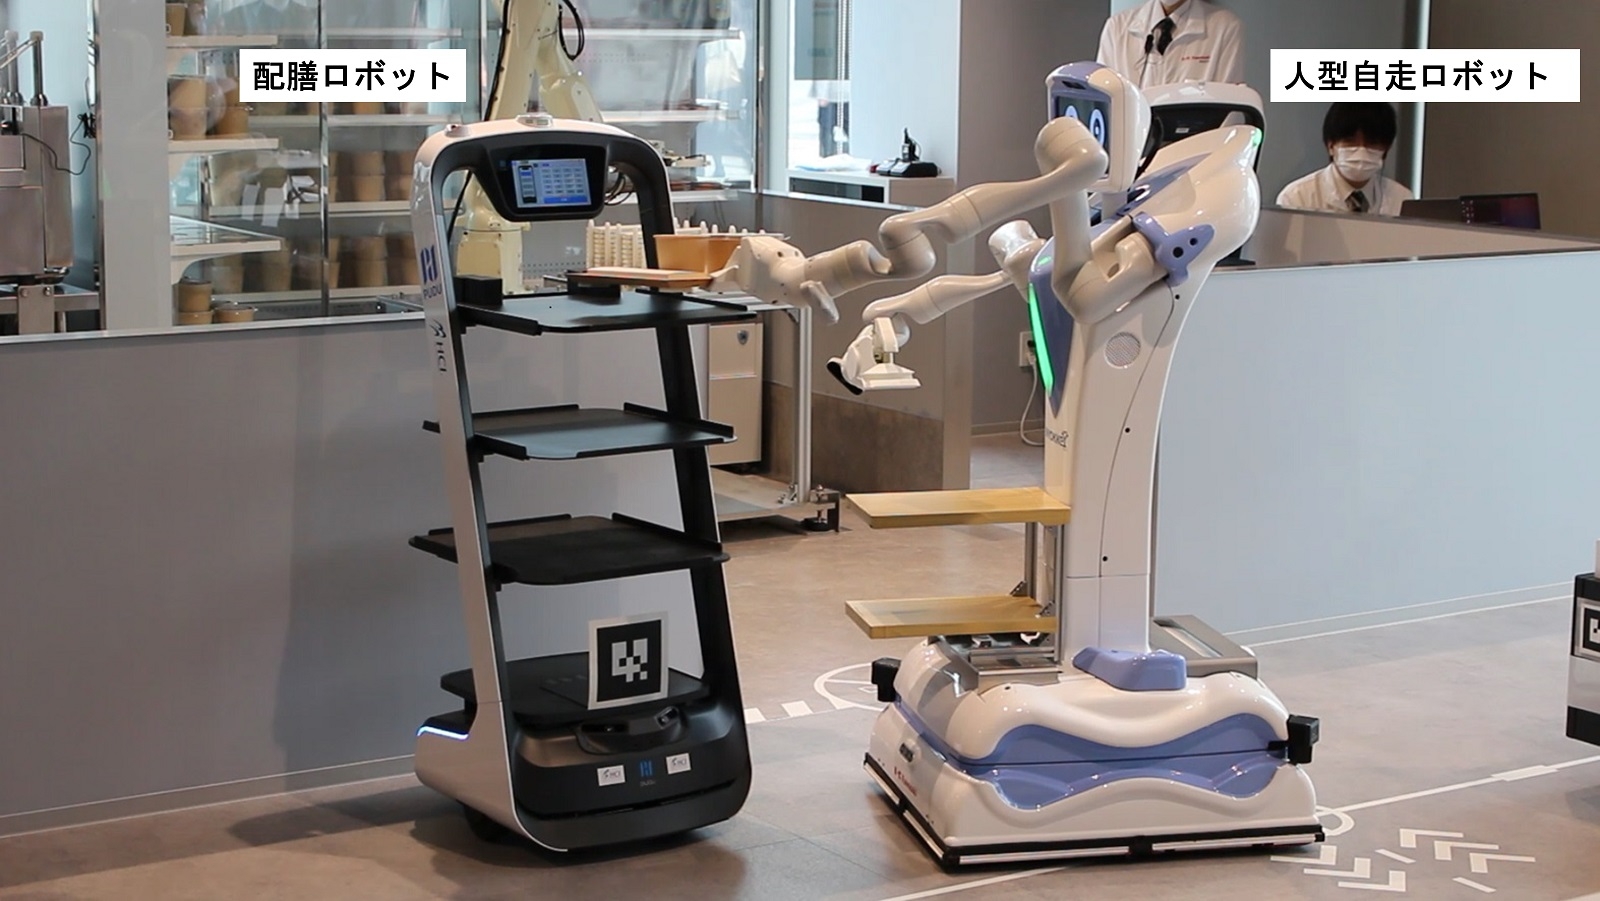 図4　配膳ロボットから人型自走ロボット「Nyokkey」が料理を受け取る様子 配膳ロボットは、写真奥の厨房から飲食エリアまで運ぶ。そこから先は、人型自走ロボットが利用客まで料理を届ける。（出所：日経クロステック）